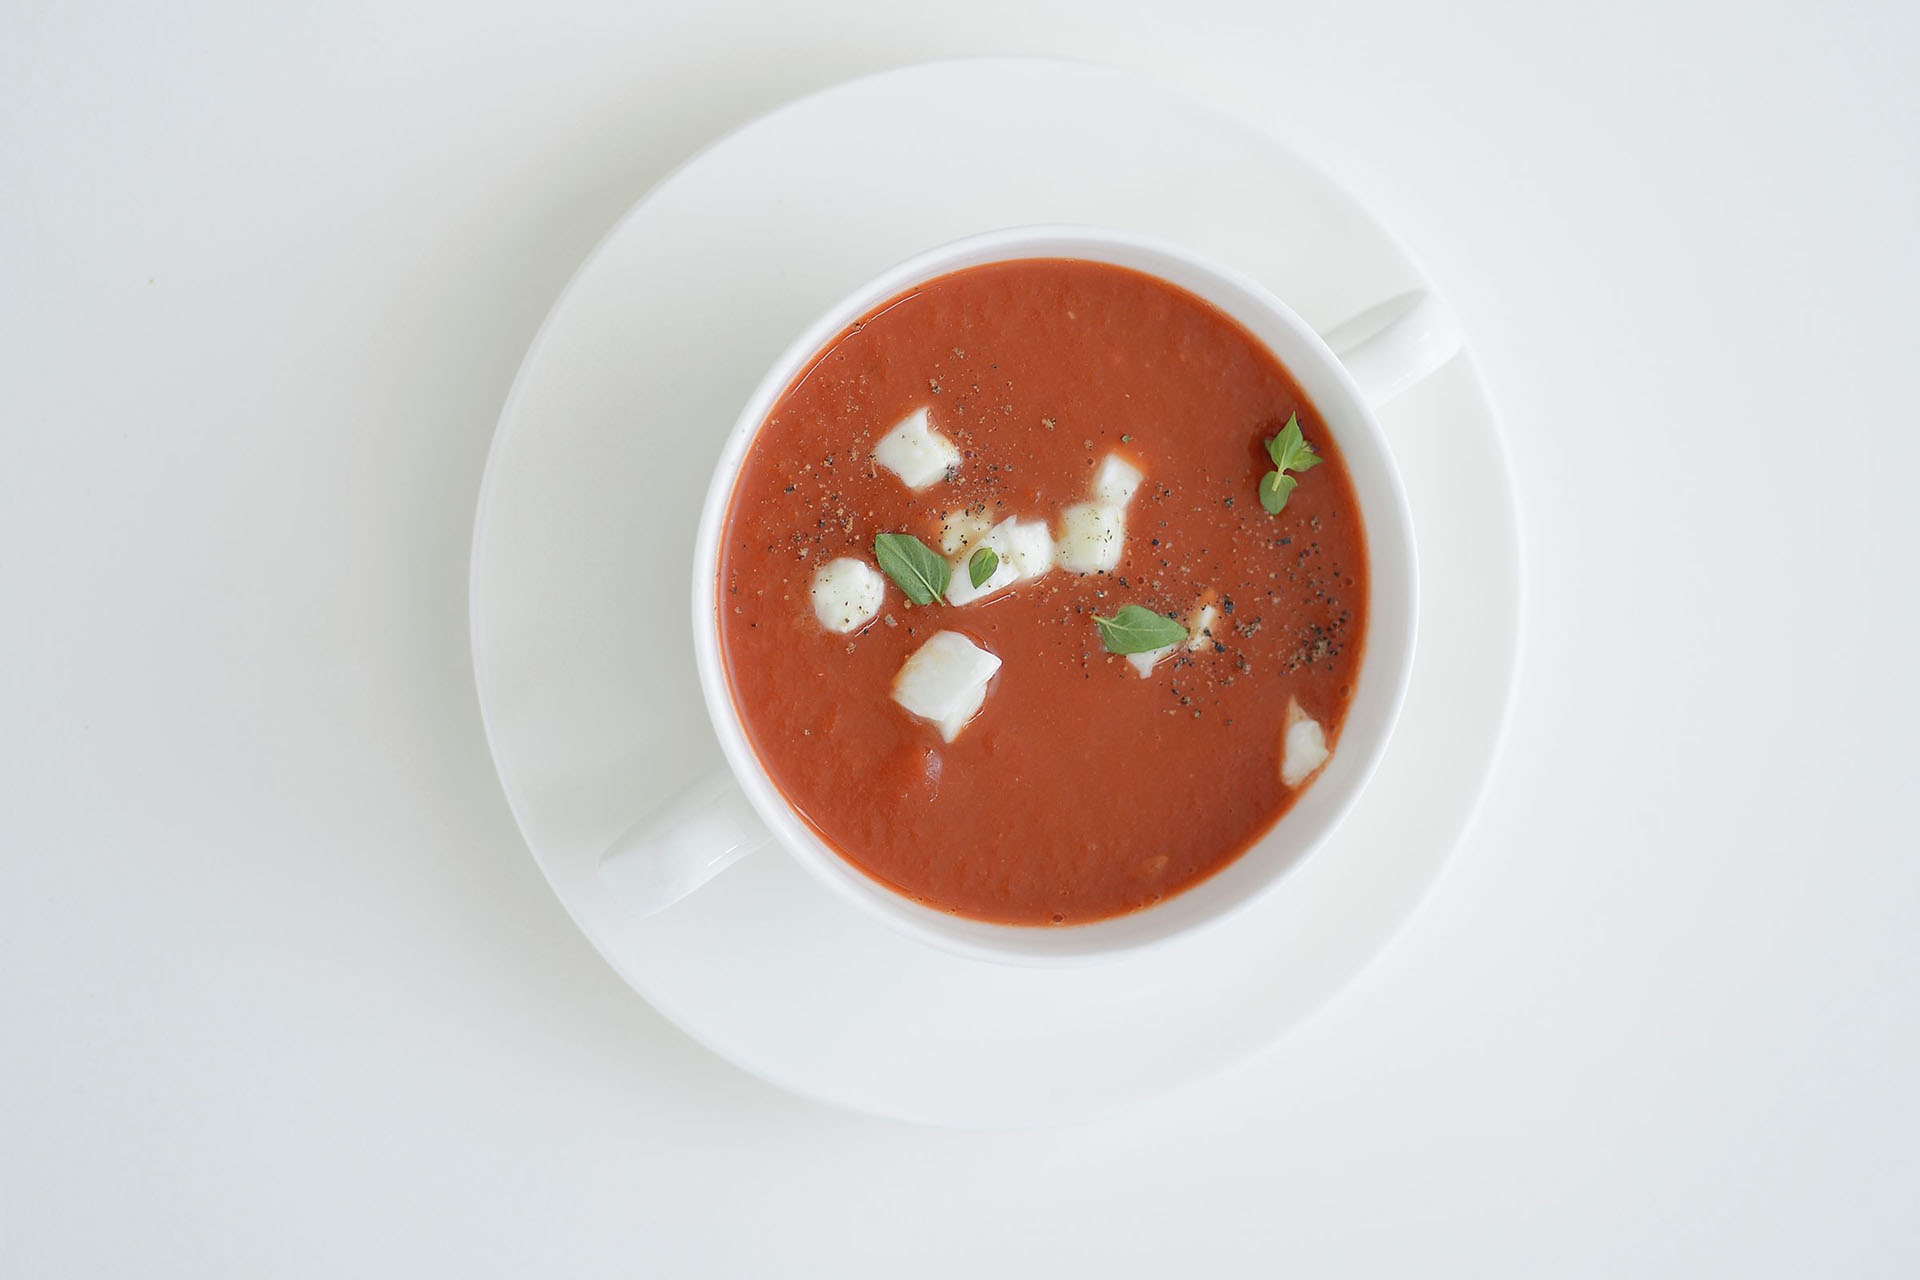 tomato mozarella soup with pepper flakes recipe